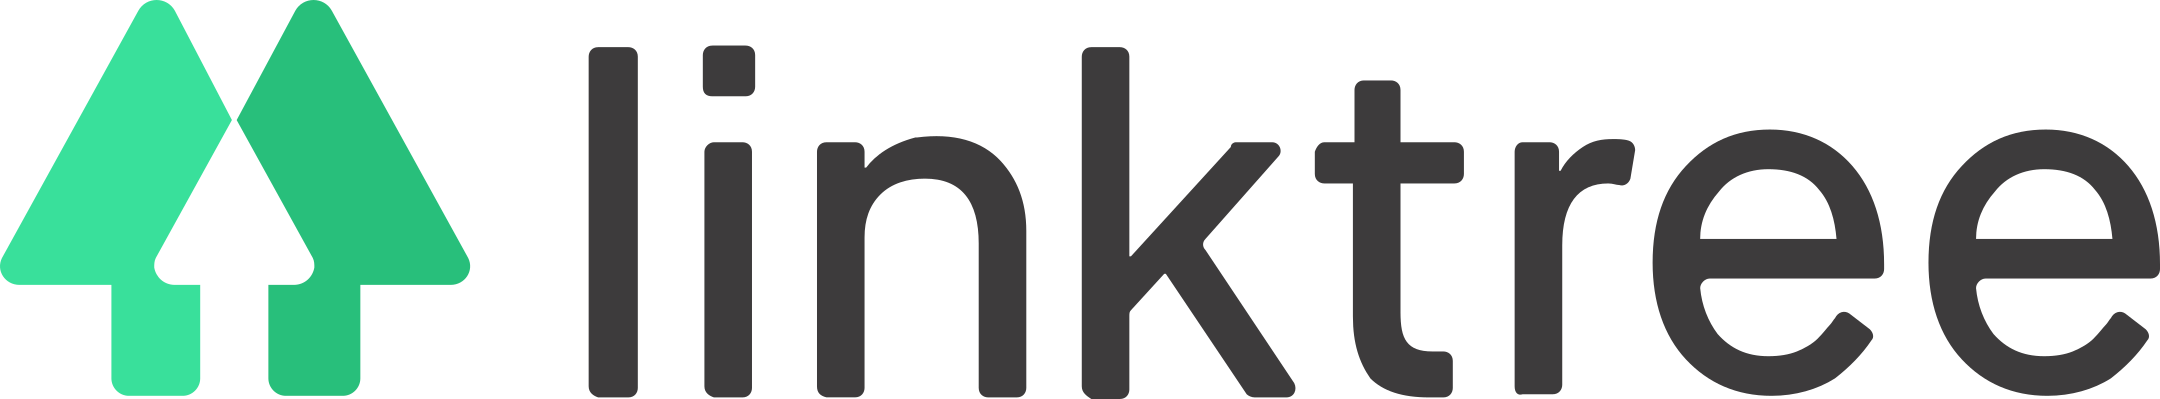 linktree logo 1 - Linktree Logo